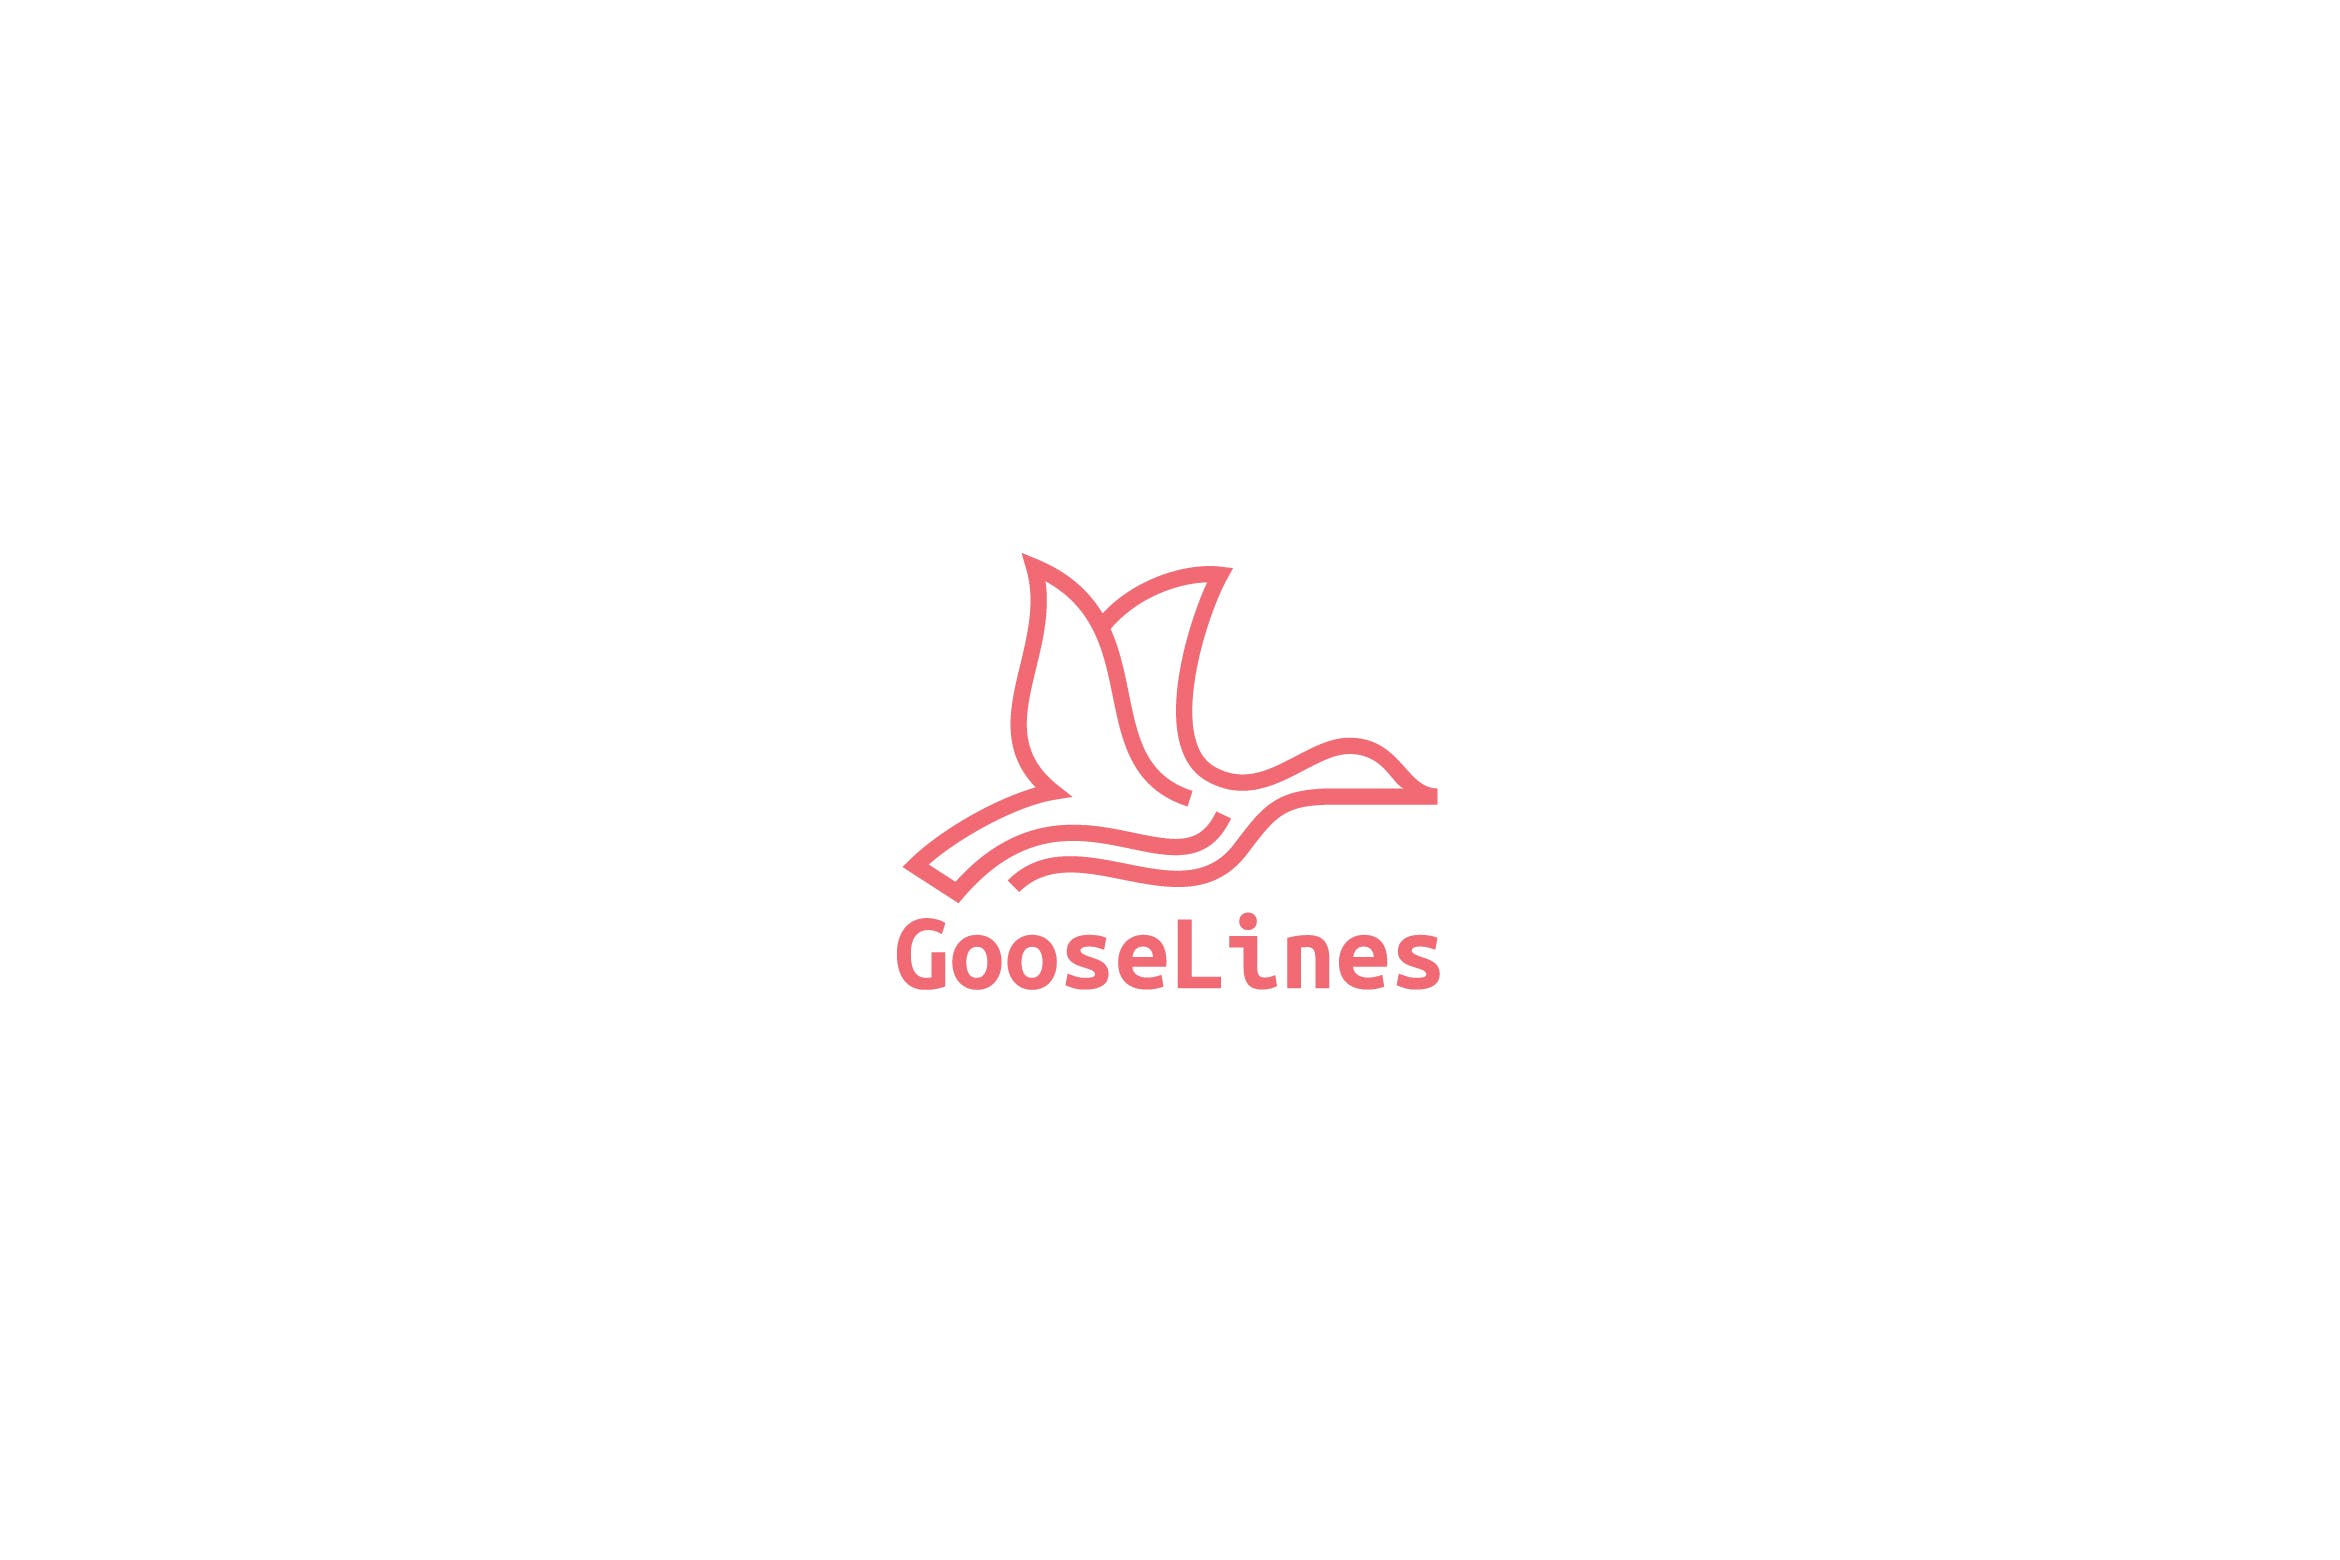 天鹅简笔画线条图形Logo设计蚂蚁素材精选模板 Goose Lines Logo插图